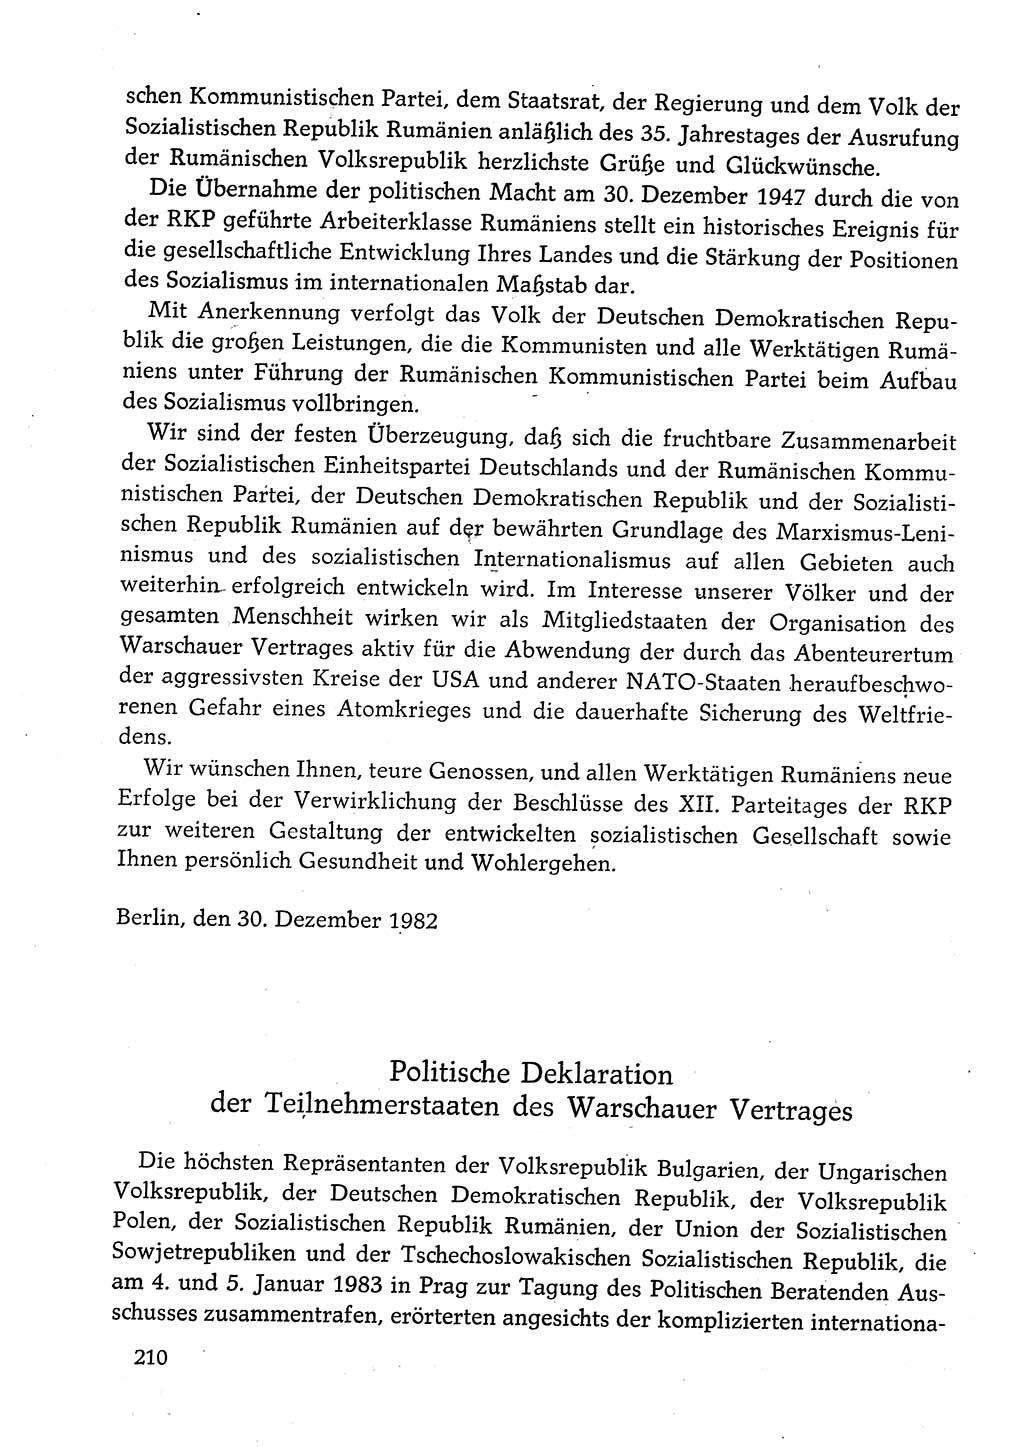 Dokumente der Sozialistischen Einheitspartei Deutschlands (SED) [Deutsche Demokratische Republik (DDR)] 1982-1983, Seite 210 (Dok. SED DDR 1982-1983, S. 210)